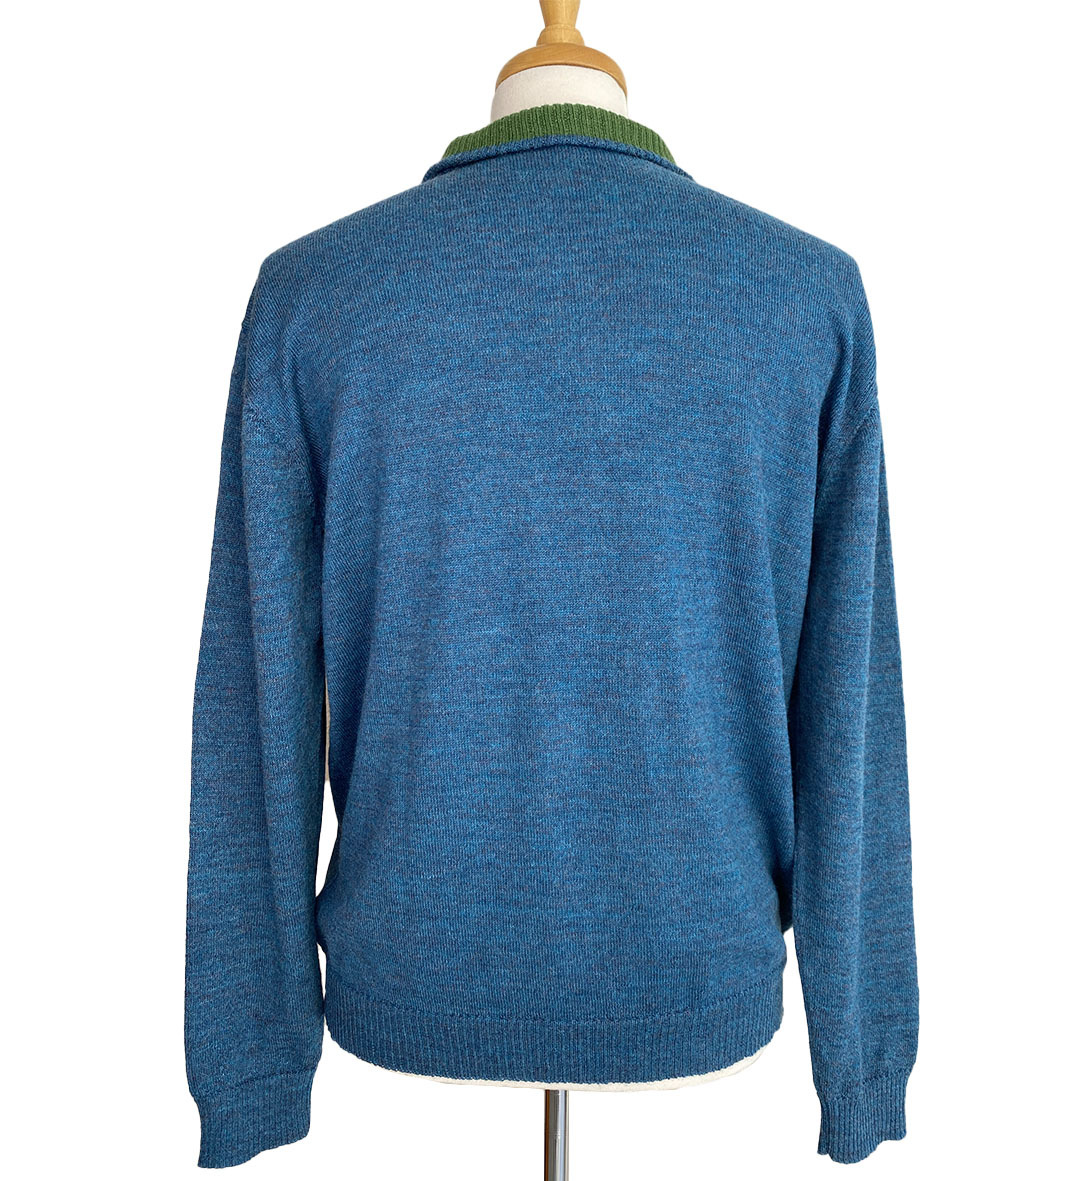 Brent Half Zip Sweater - Blue/Green - 2